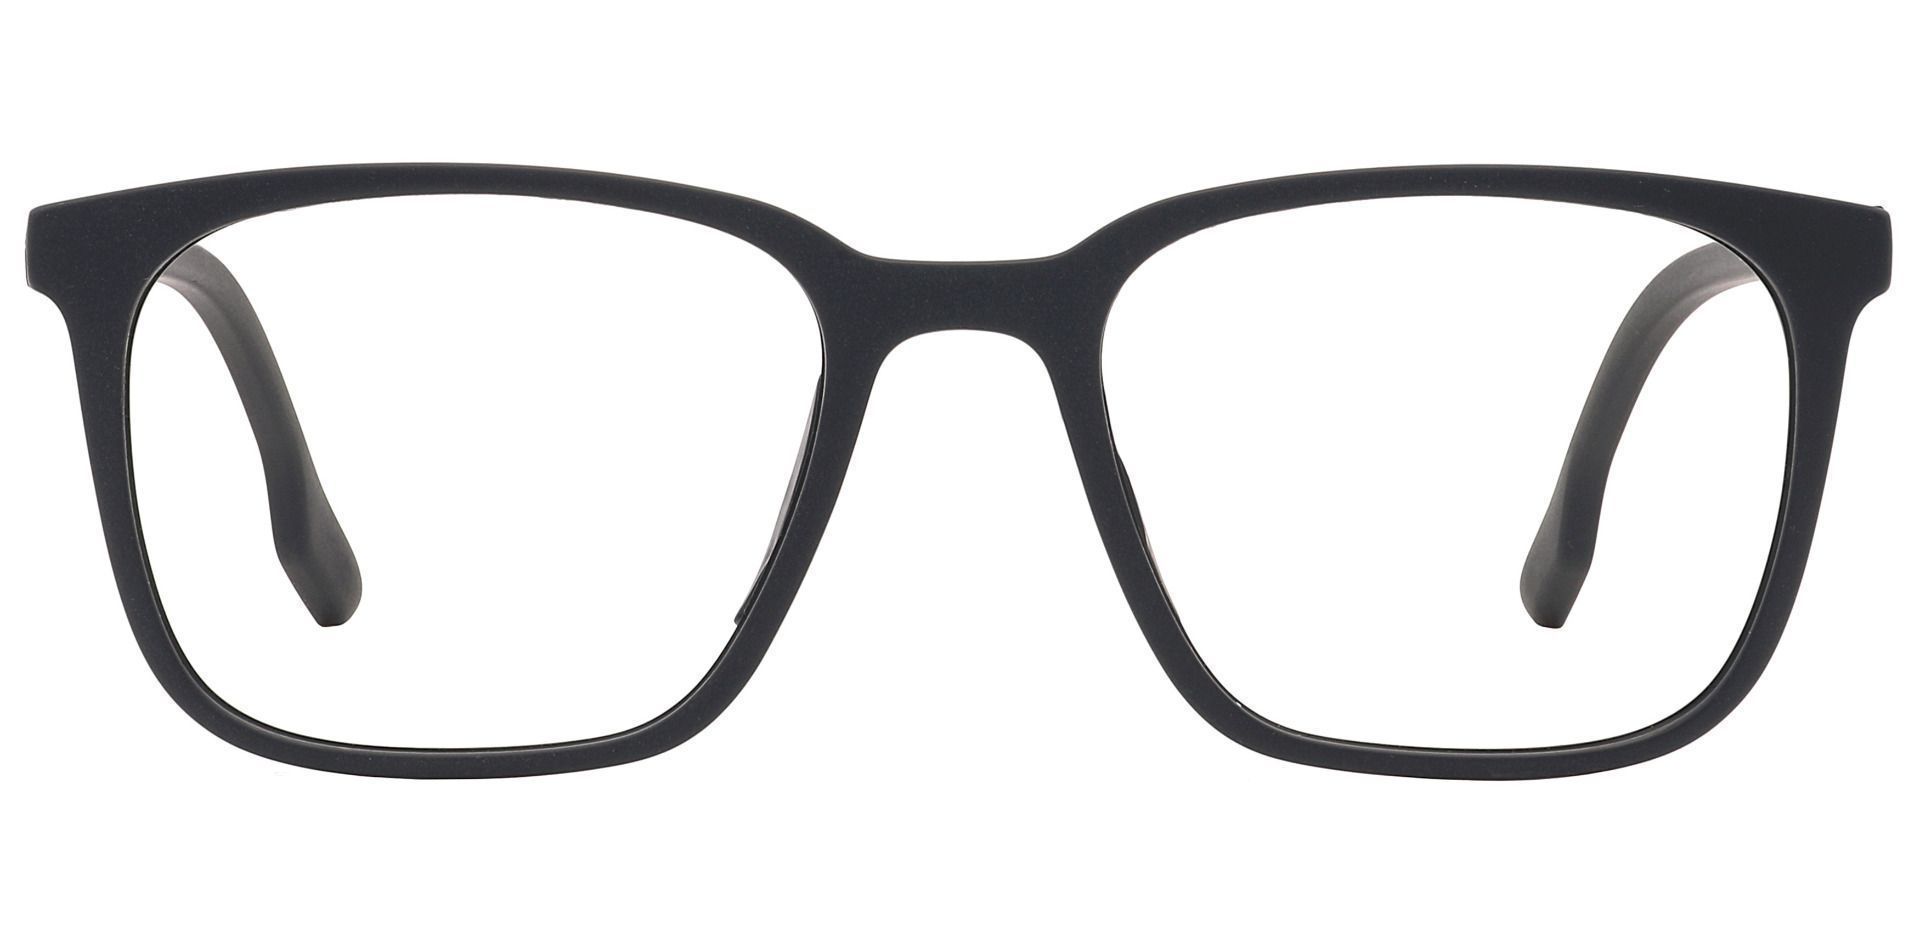 Elia Square Prescription Glasses - Black